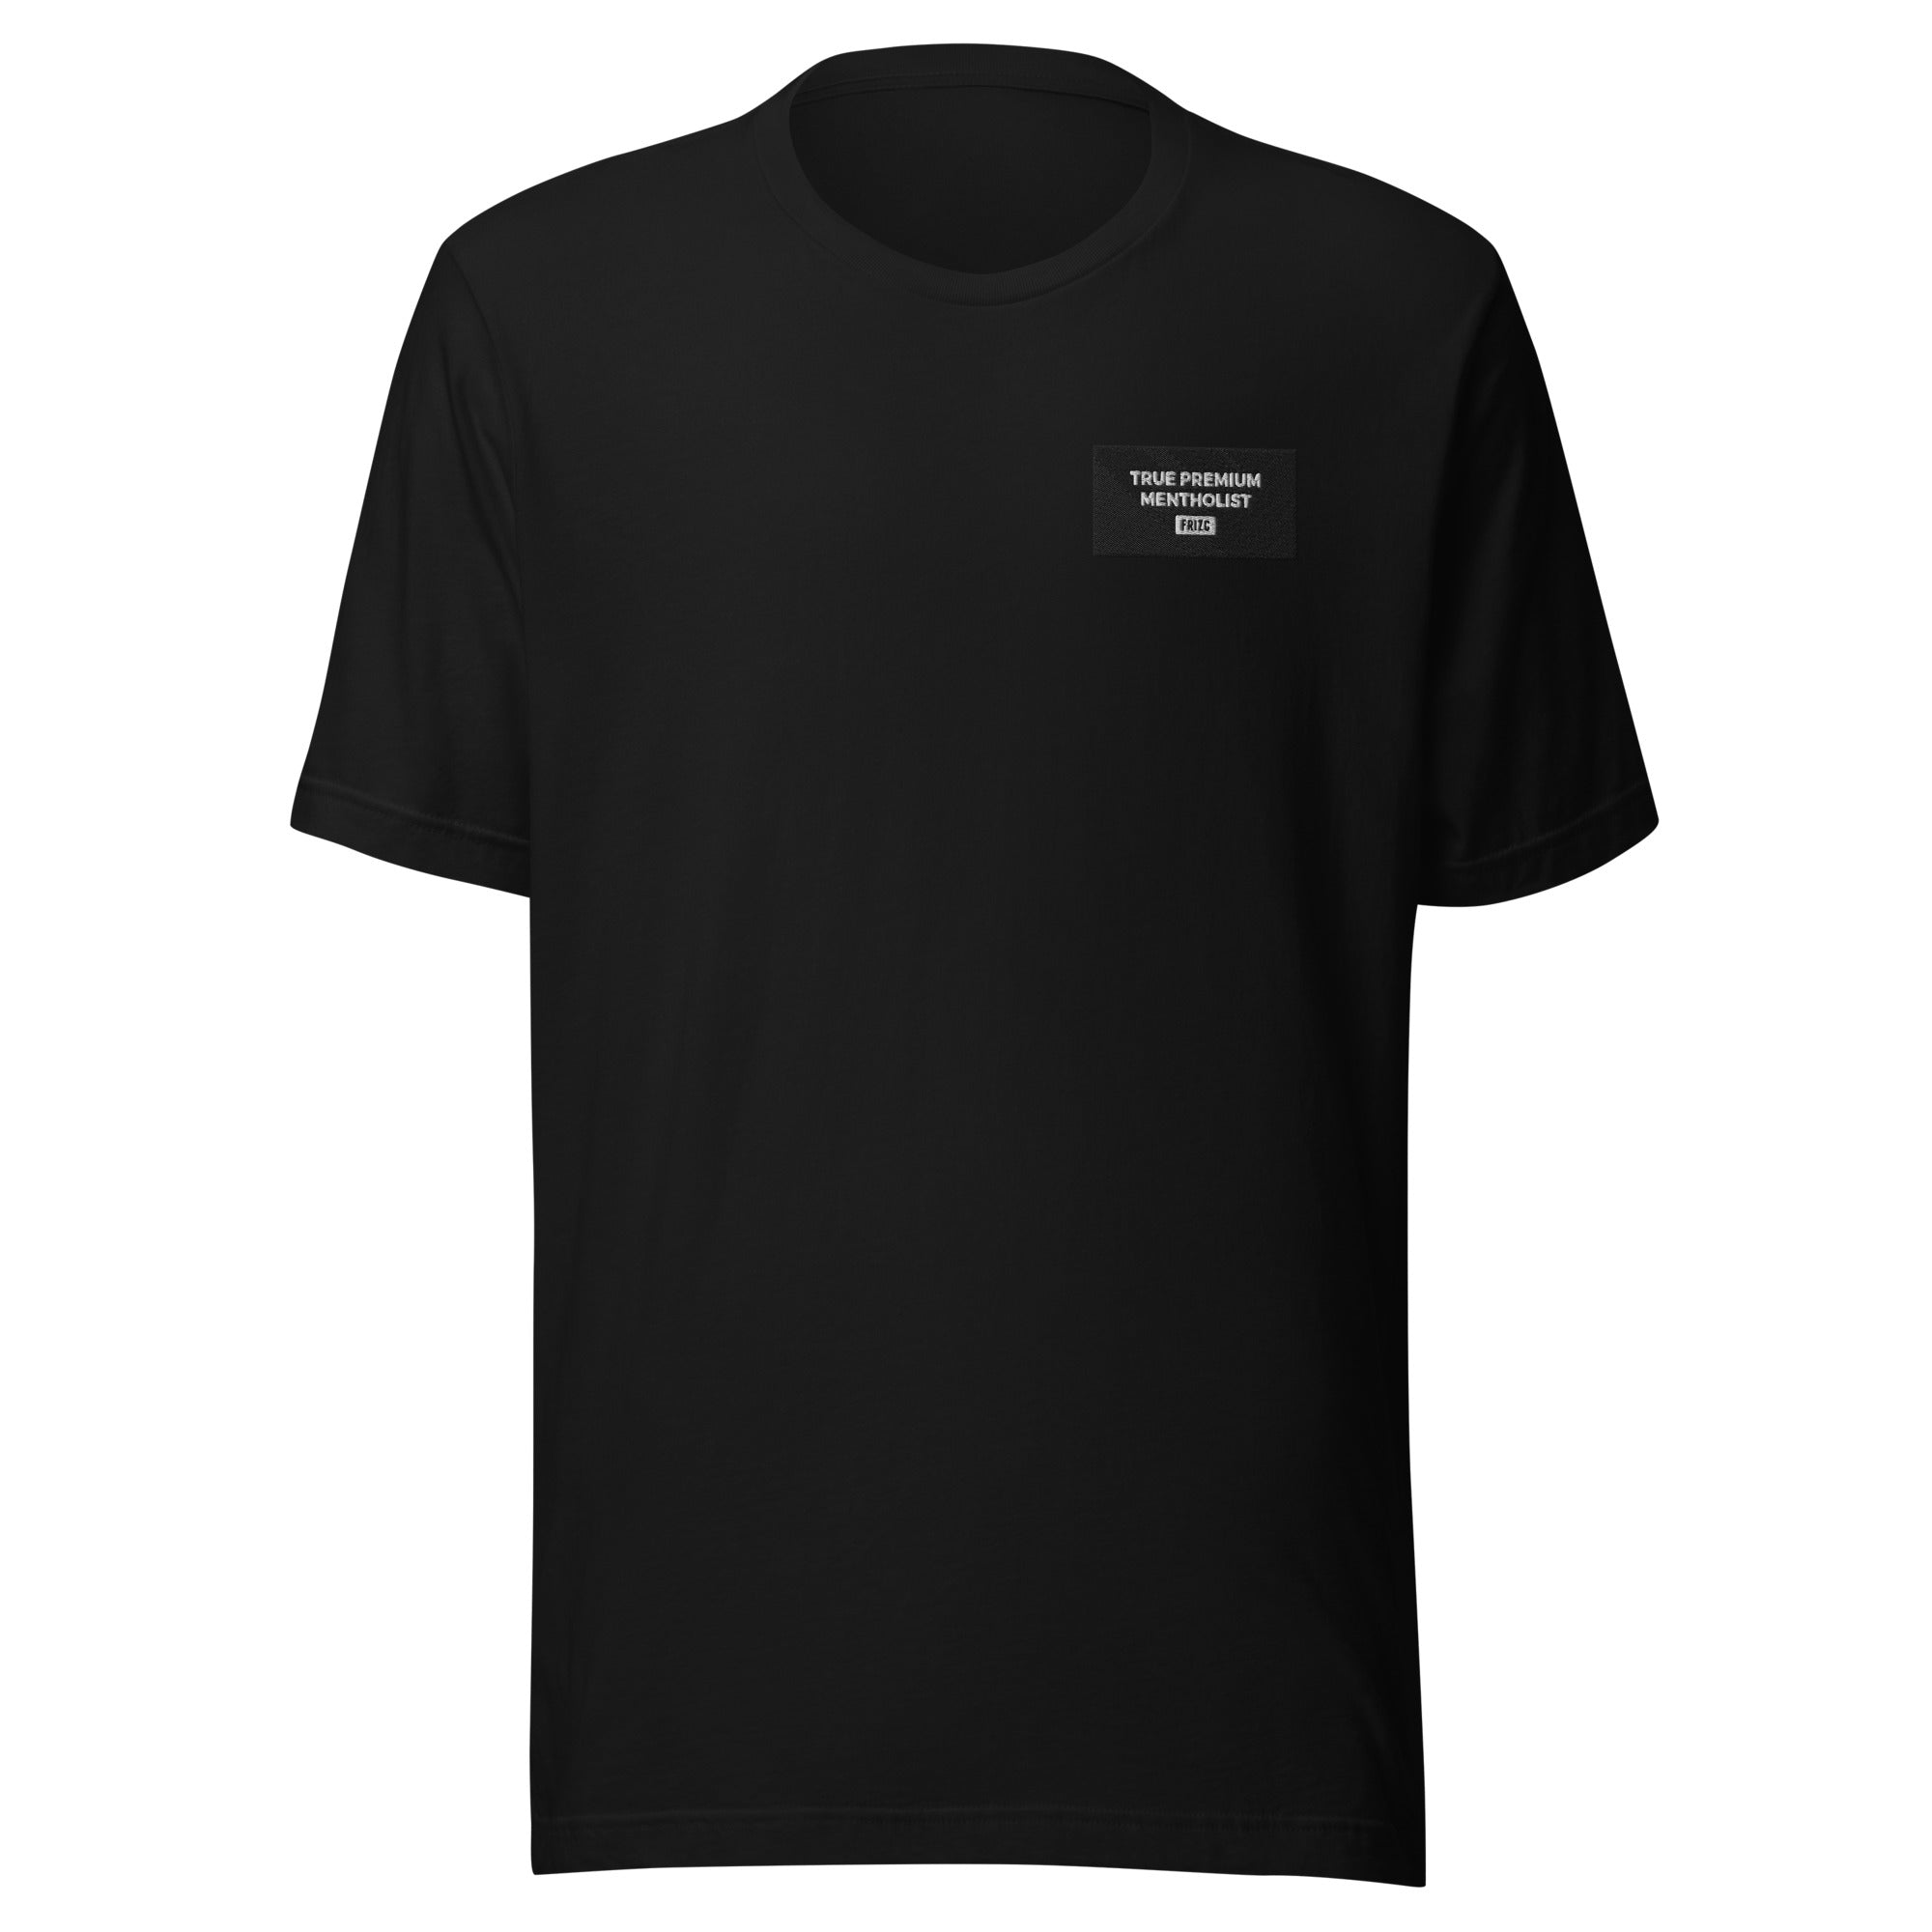 Premium Mentholist / T-Shirt Unisex t-shirt